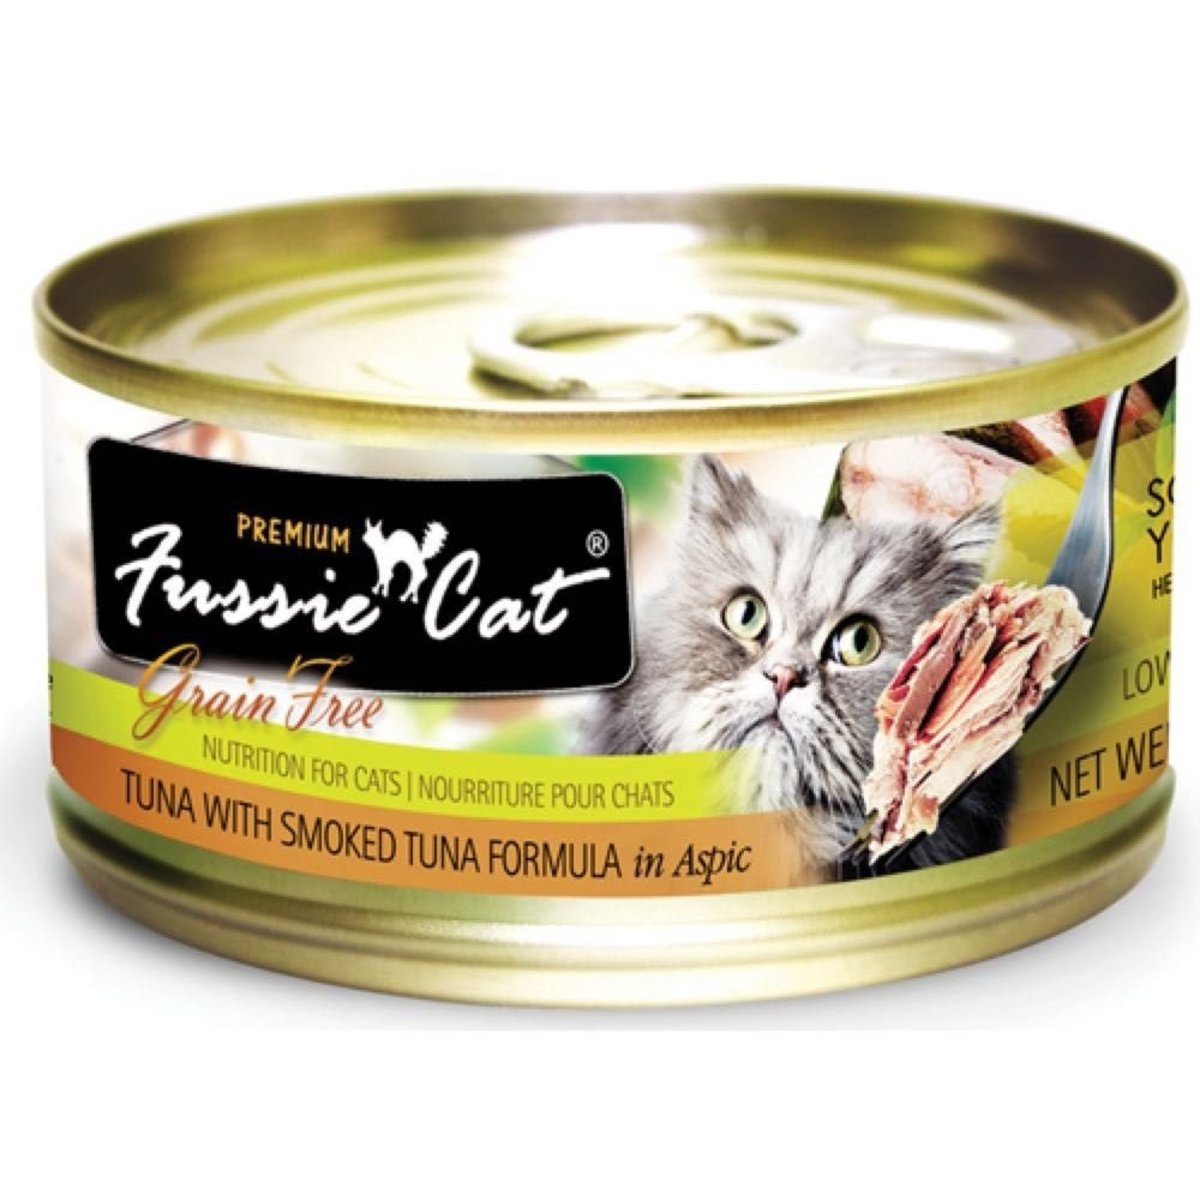 Premium Tuna W/Smoked Tuna (Carton) (24/3 oz) (Fu-Stc)